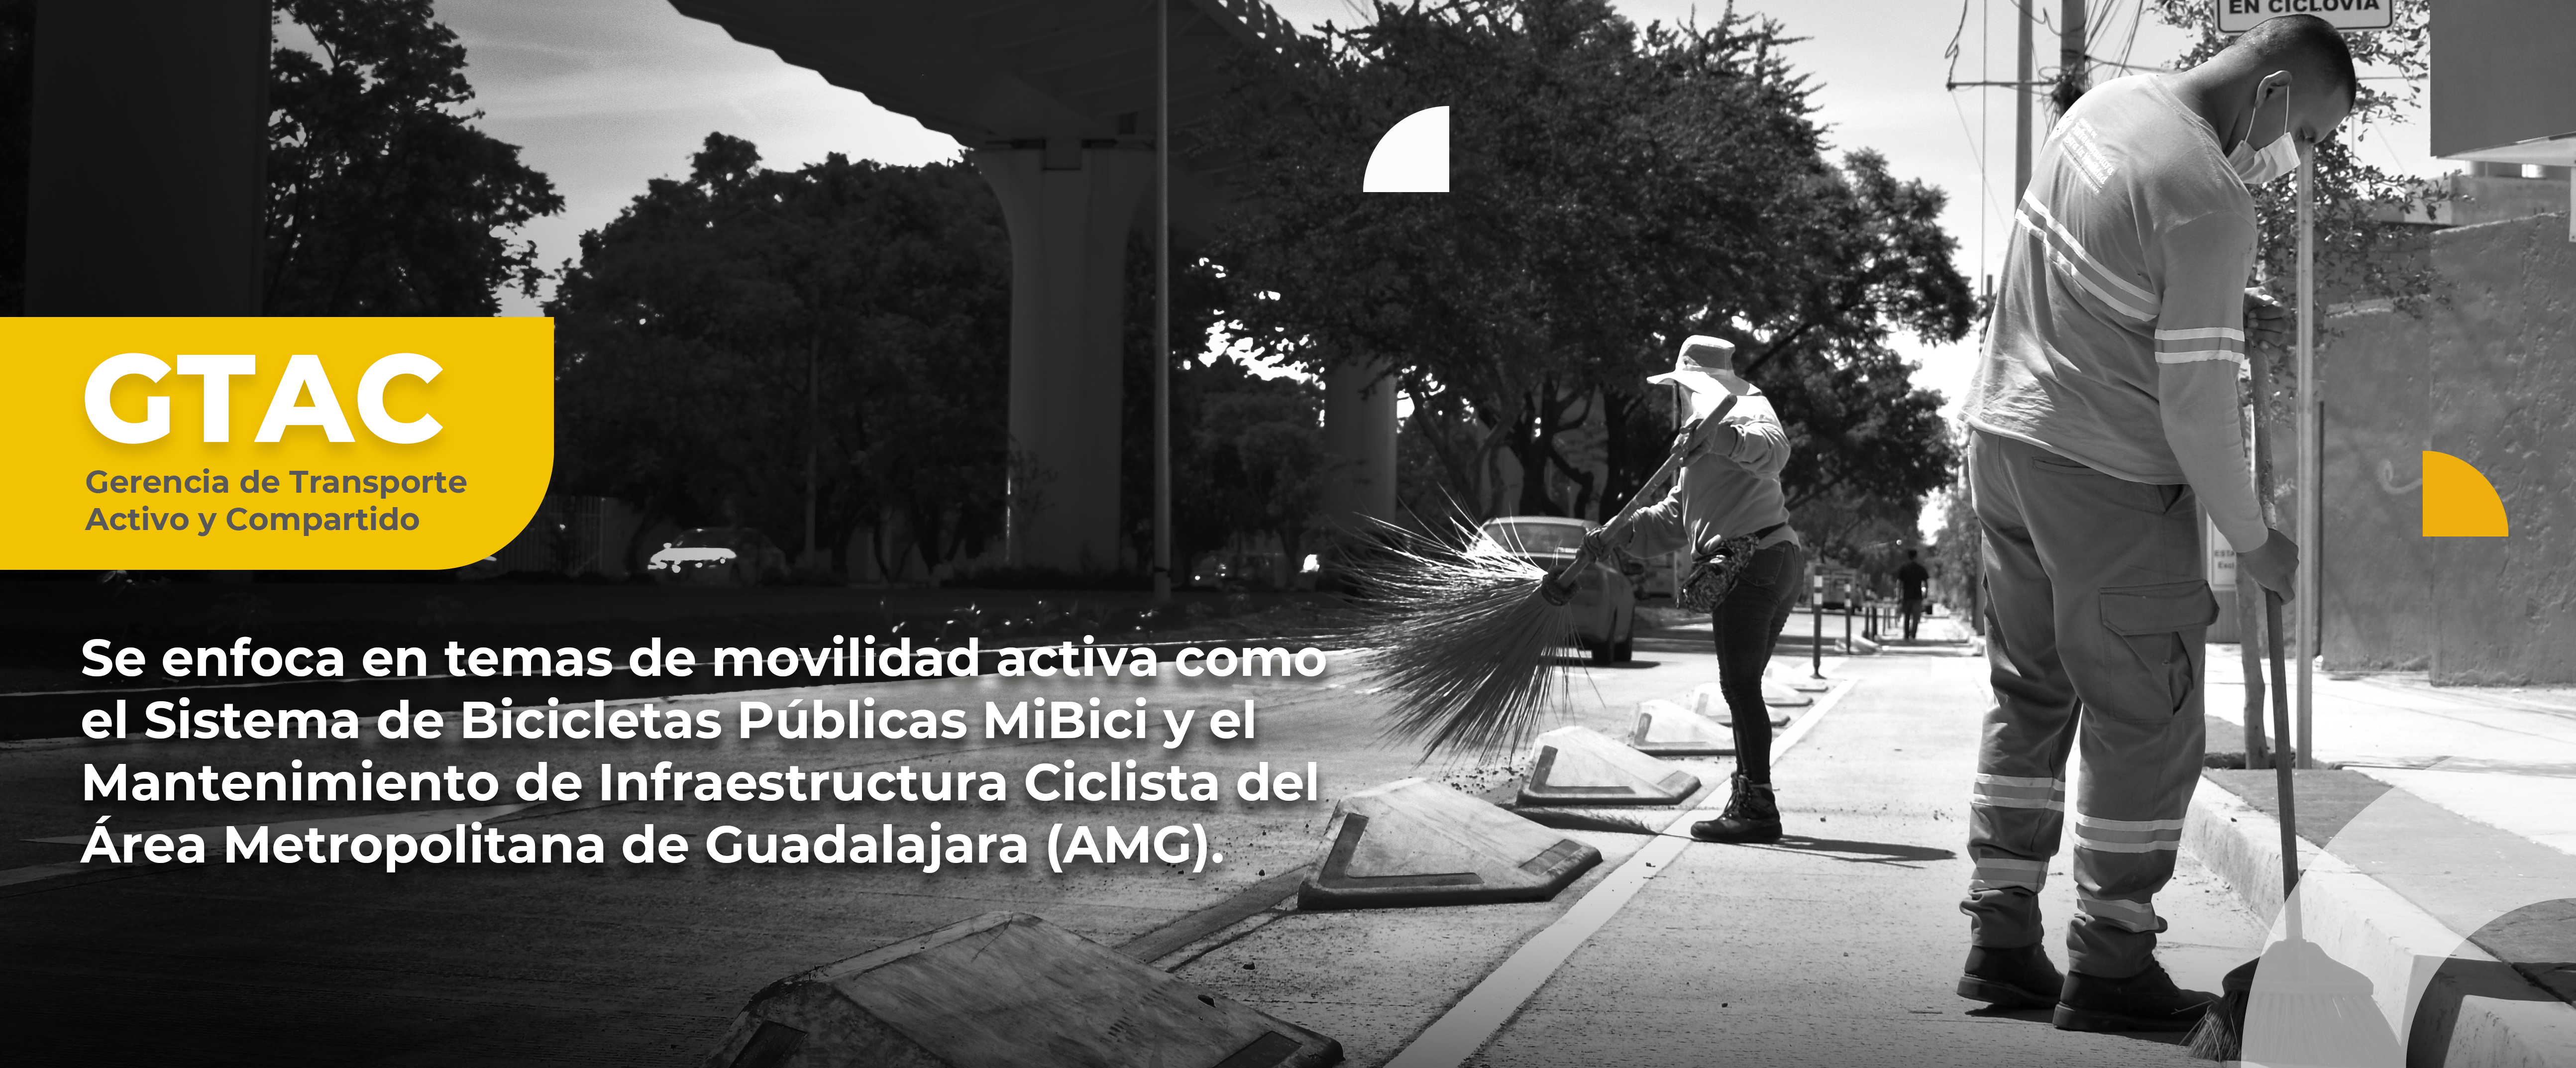 La Gerencia de Transporte Activo y Compartido (GTAC), se enfoca en temas de movilidad activa como el Sistema de Bicicletas Públicas MiBici y el Mantenimiento de Infraestructura Ciclista del Área Metropolitana de Guadalajara (AMG).